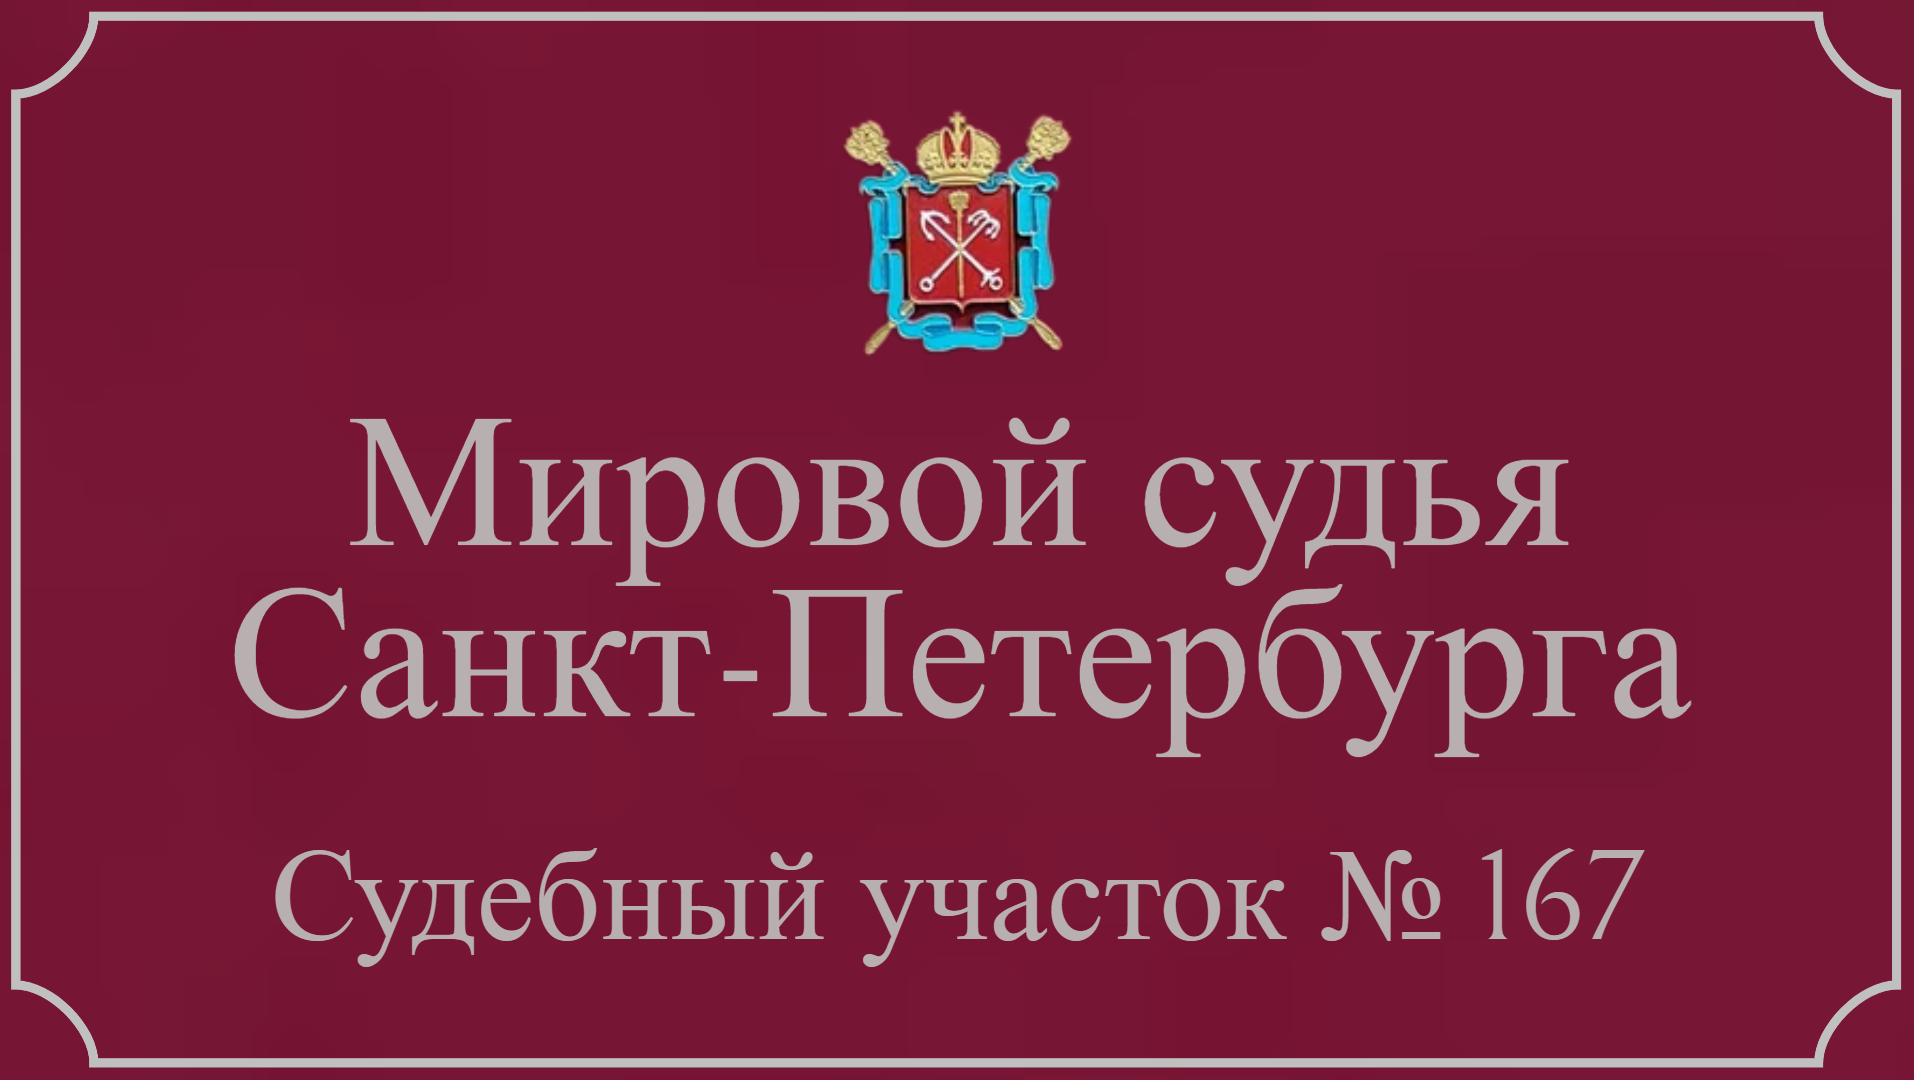 Информация по 167 судебному участку в Санкт-Петербурге.